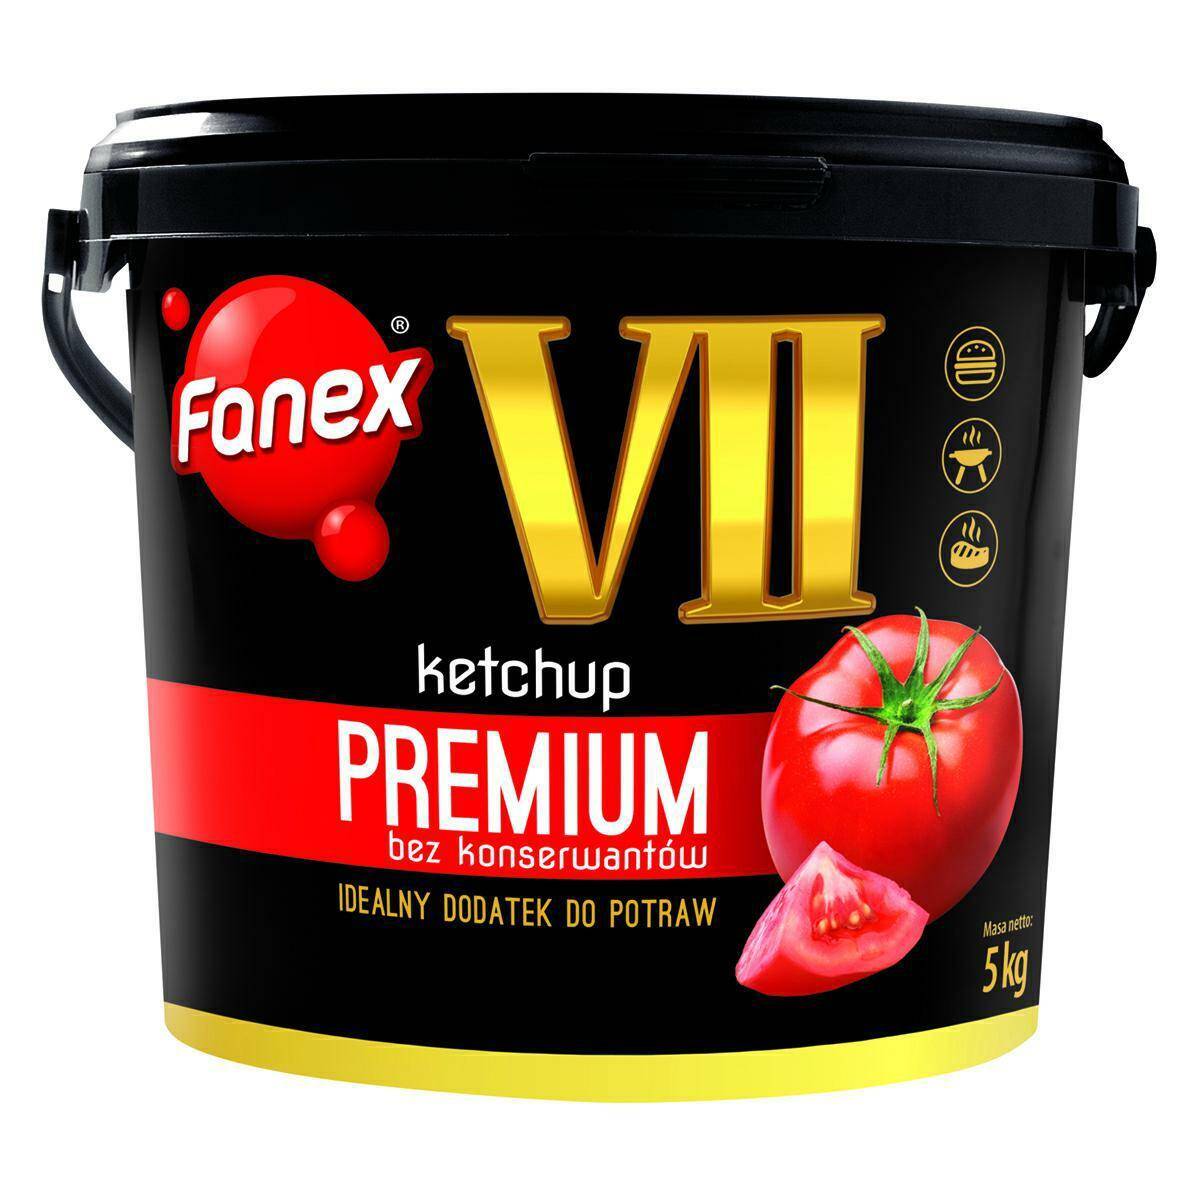 Ketchup VII Premium 5kg